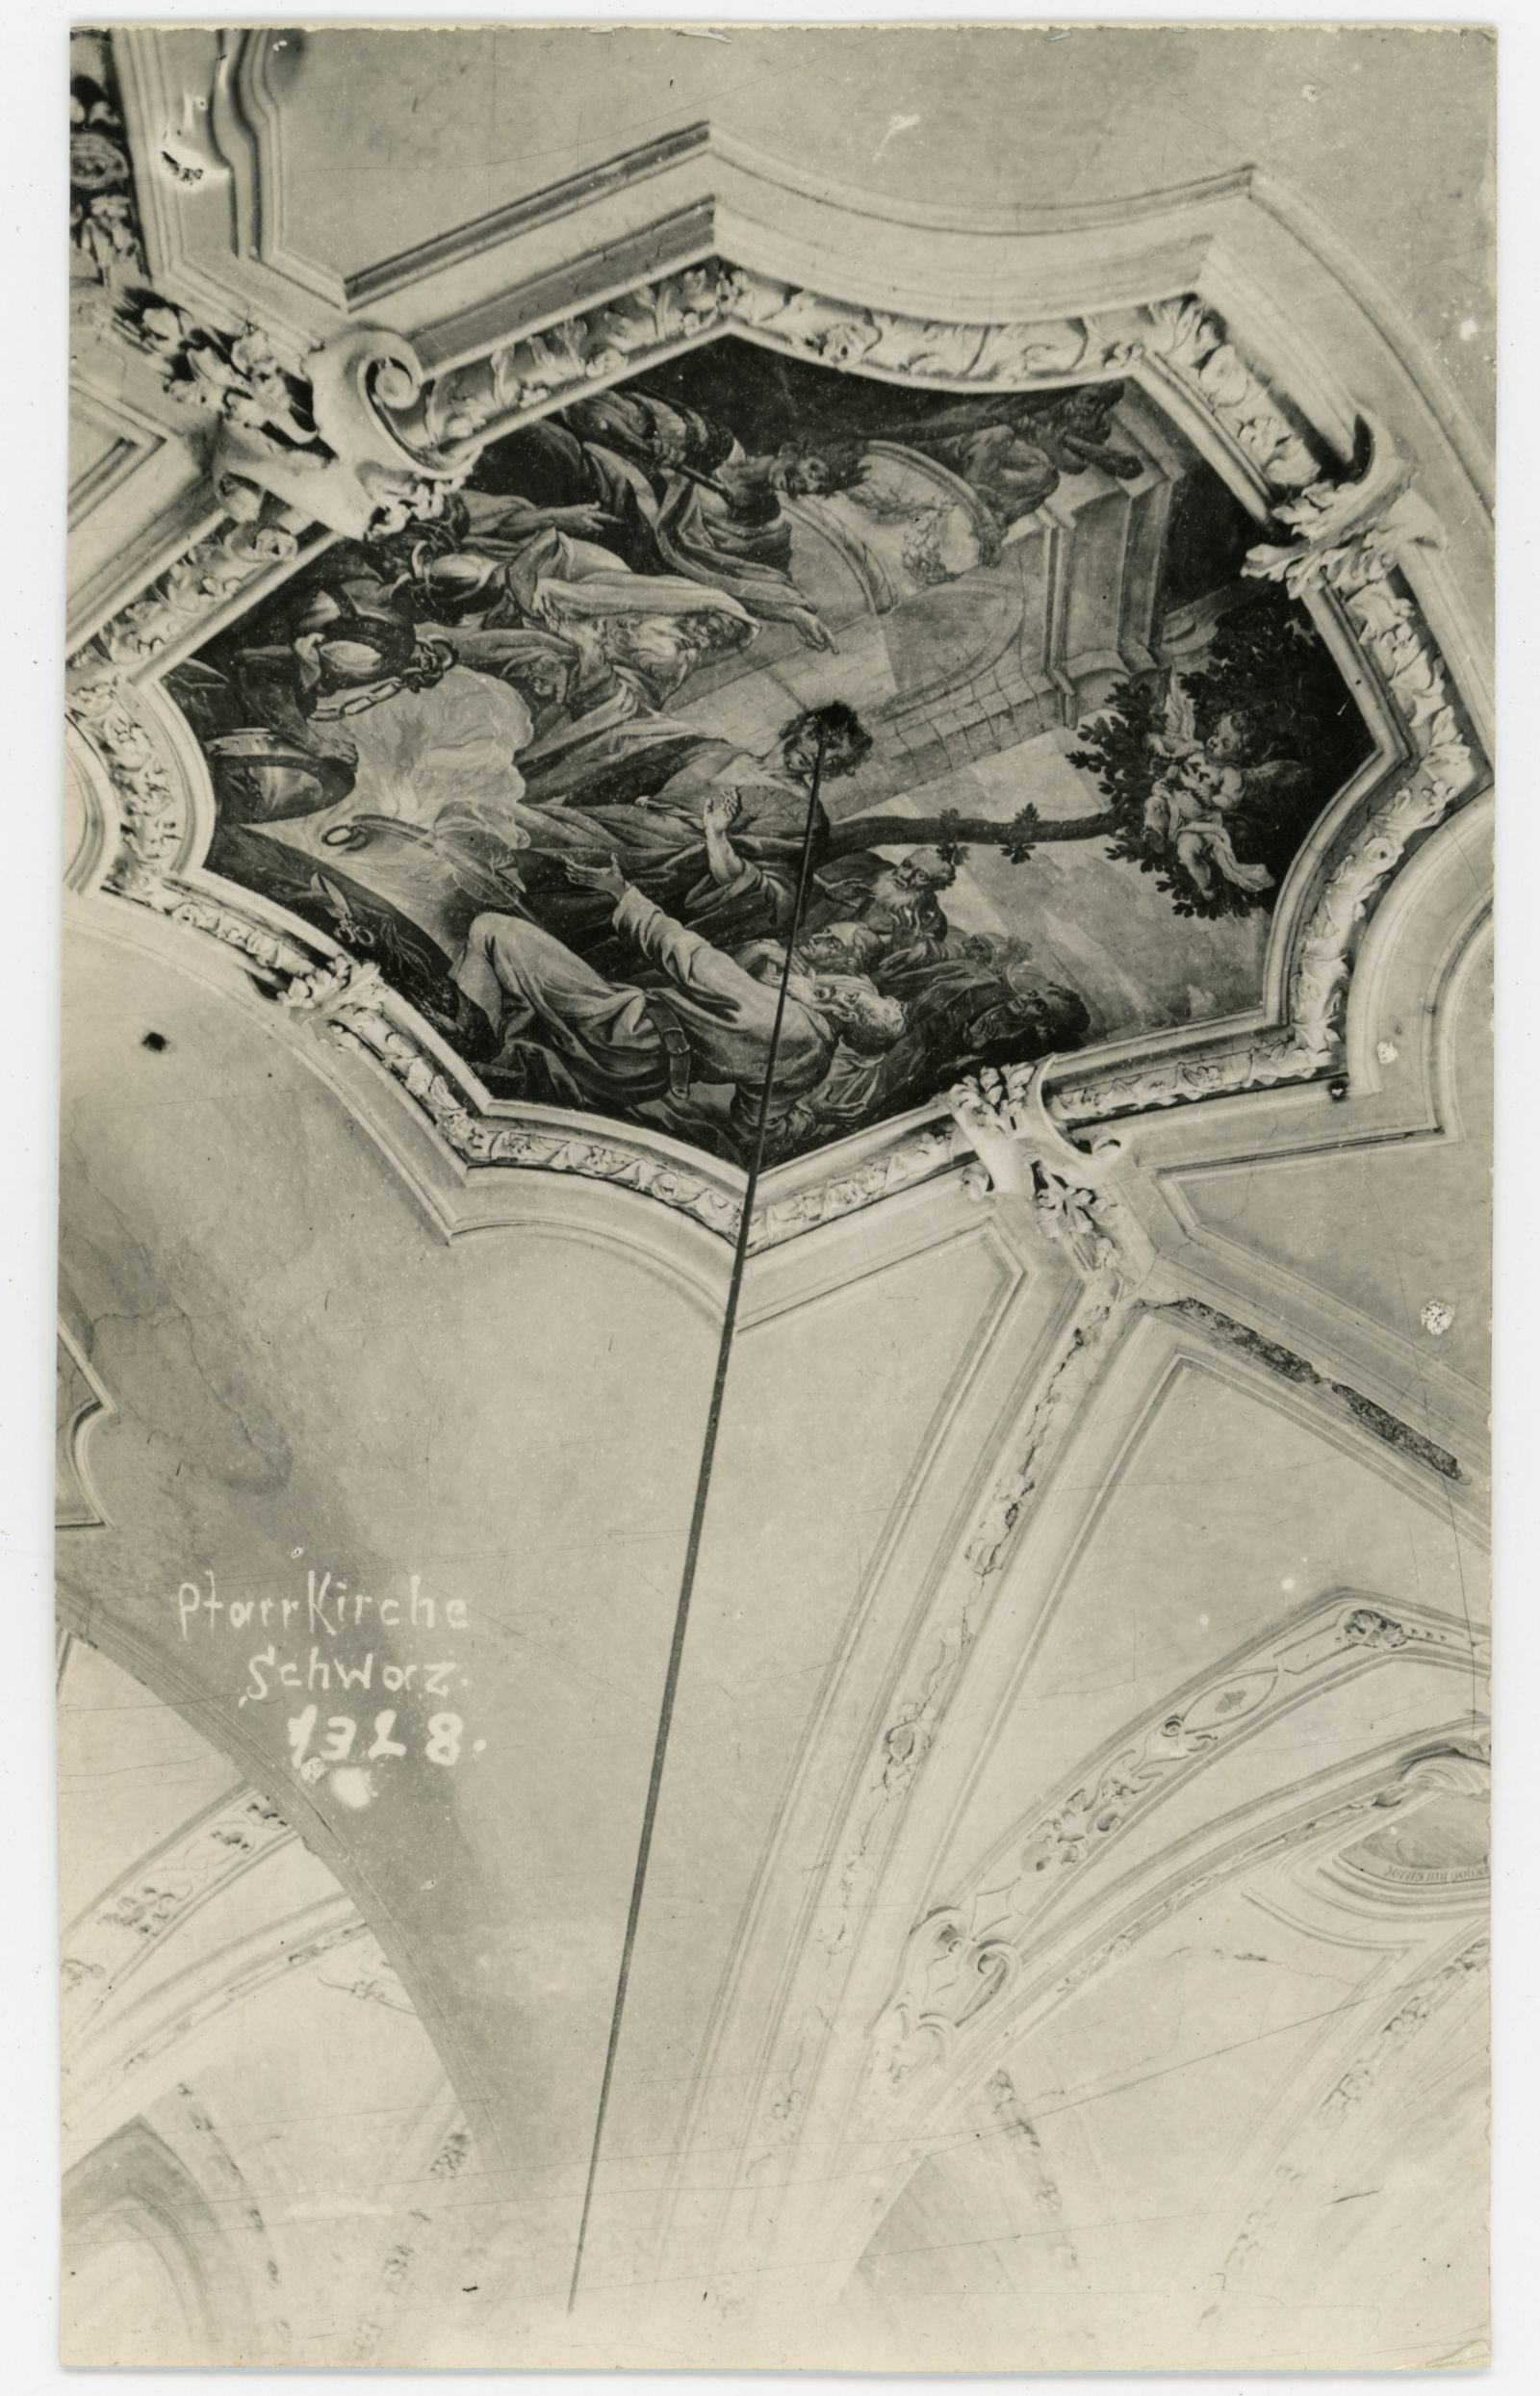 Fresko, Pfarrkirche Schwaz, vor der Regotisierung